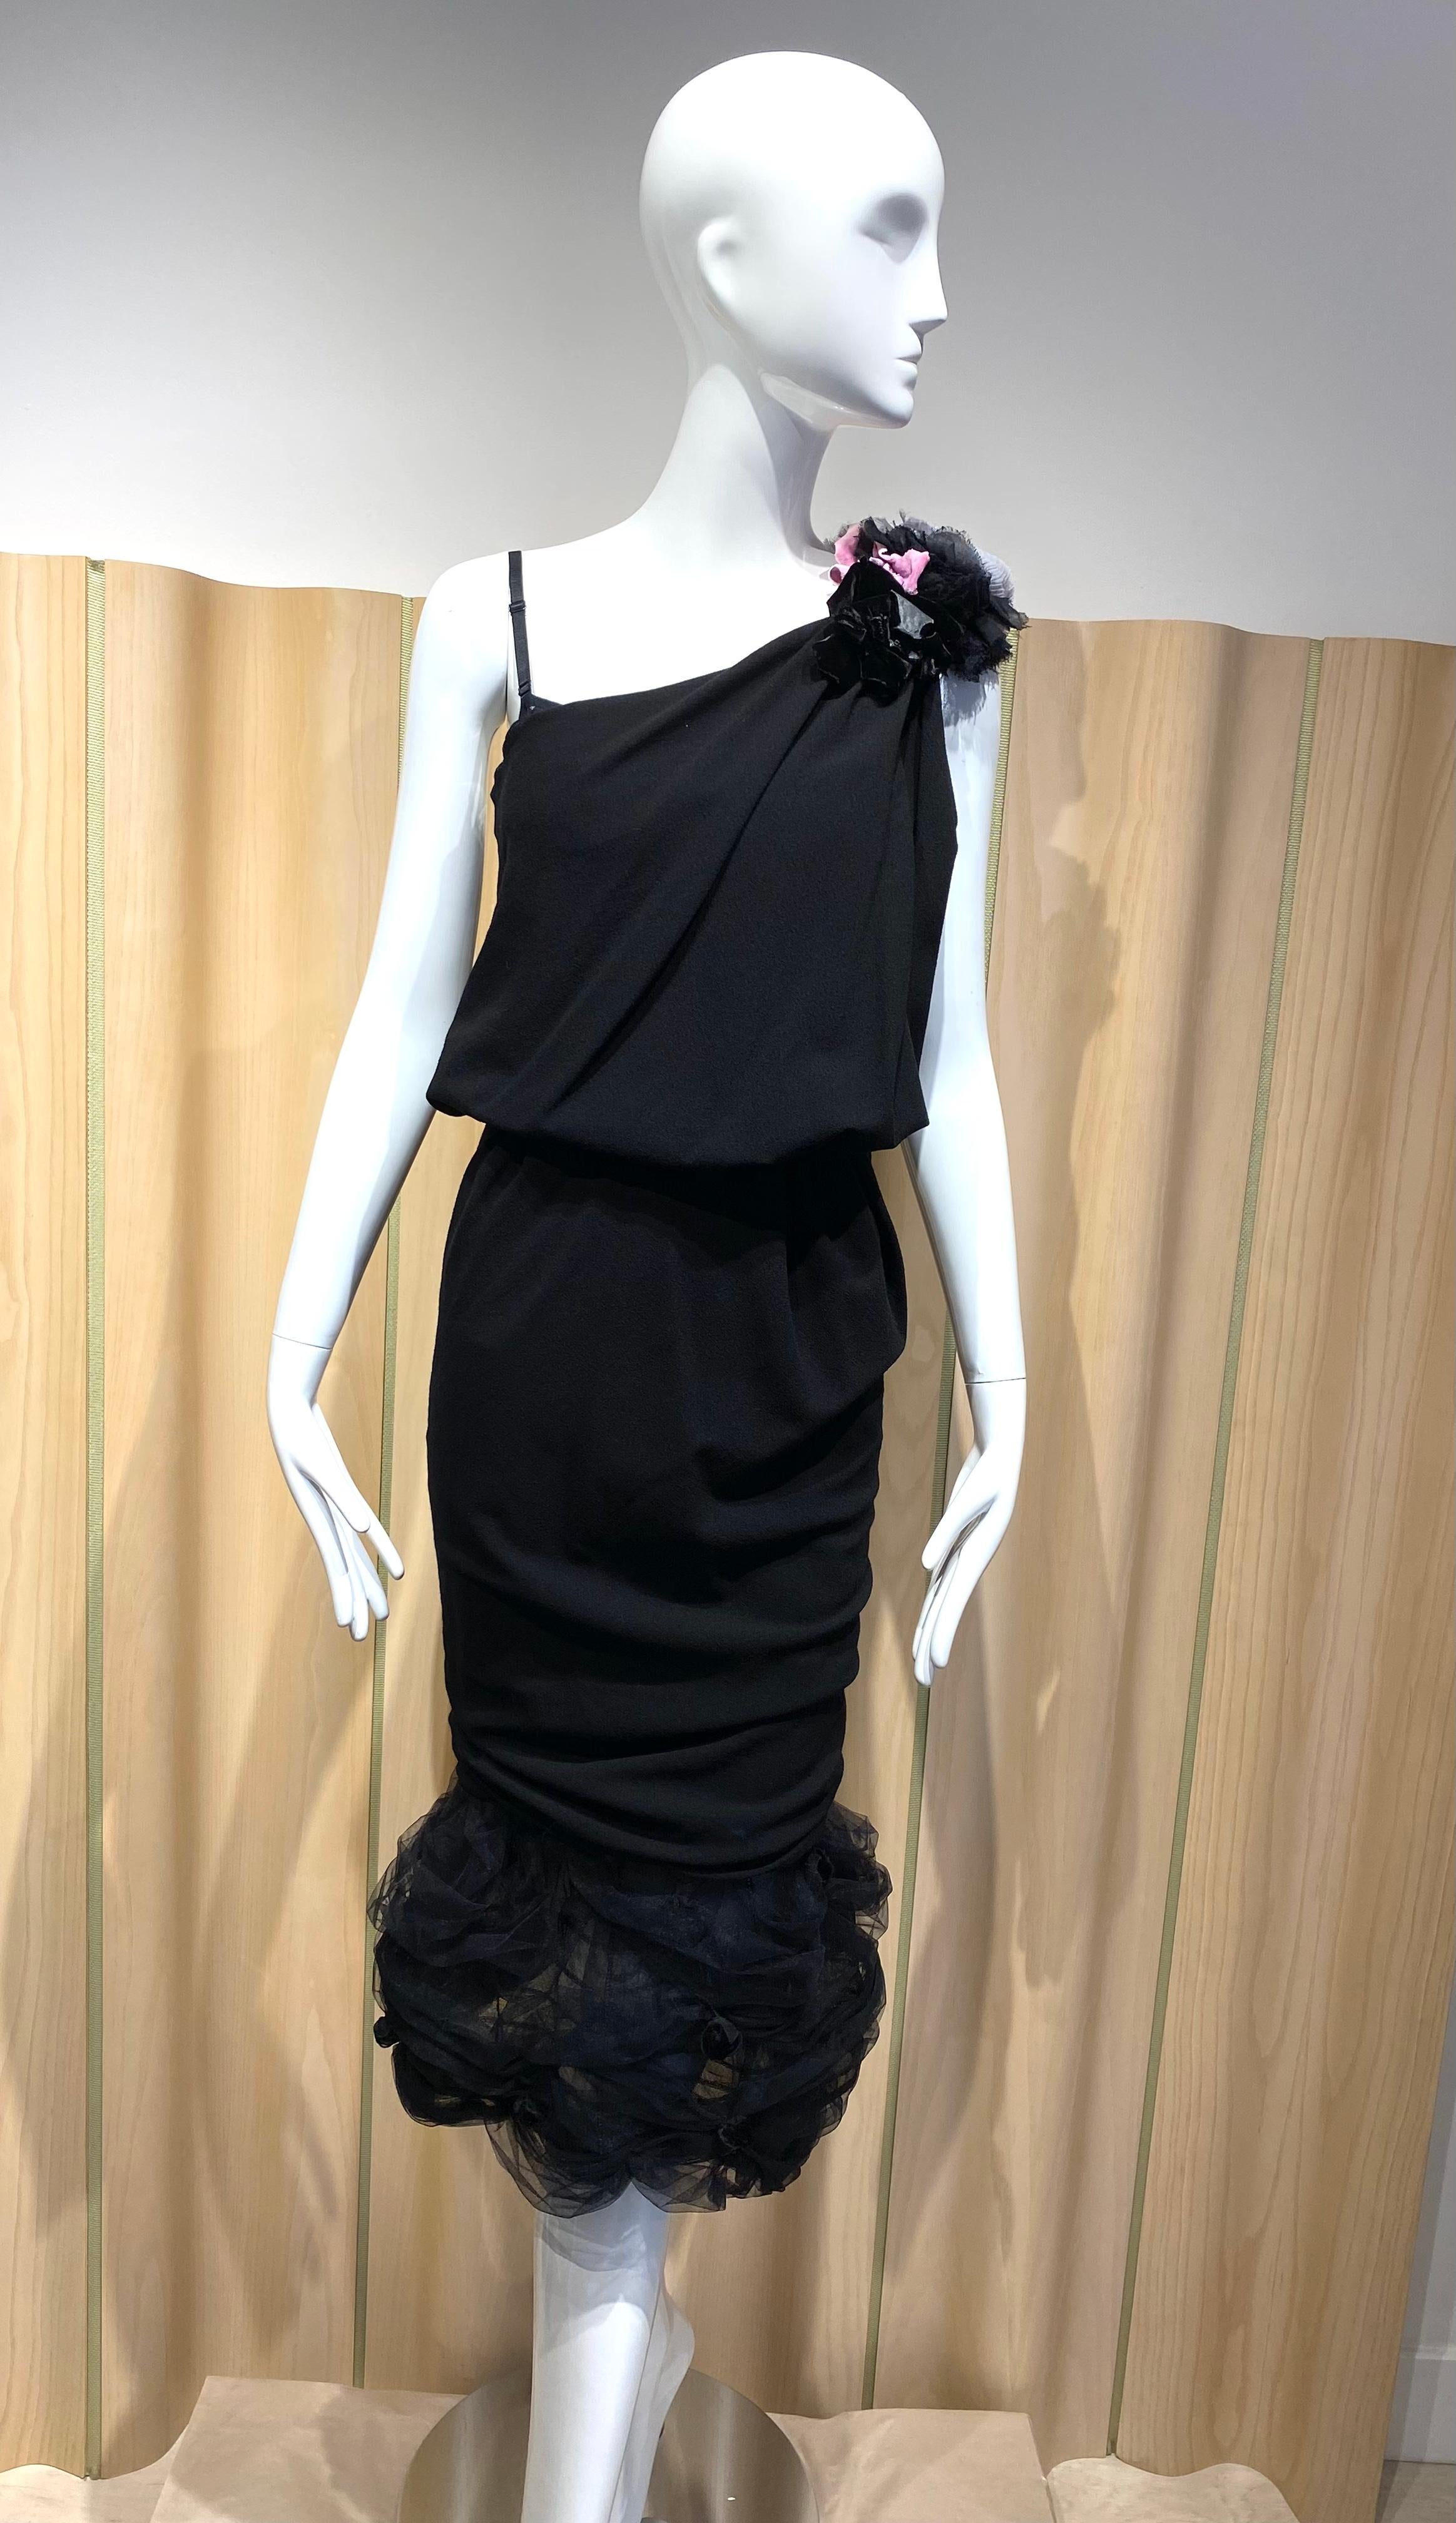 Sexy Nina Ricci Schwarzes, asymmetrisch geschnittenes Kleid aus Krepp mit eingearbeitetem Korsett-BH und Rosette.
Spaghettiträger . Rüschen. Rüschen, 
Perfektes Cocktailkleid.
Brustumfang 31